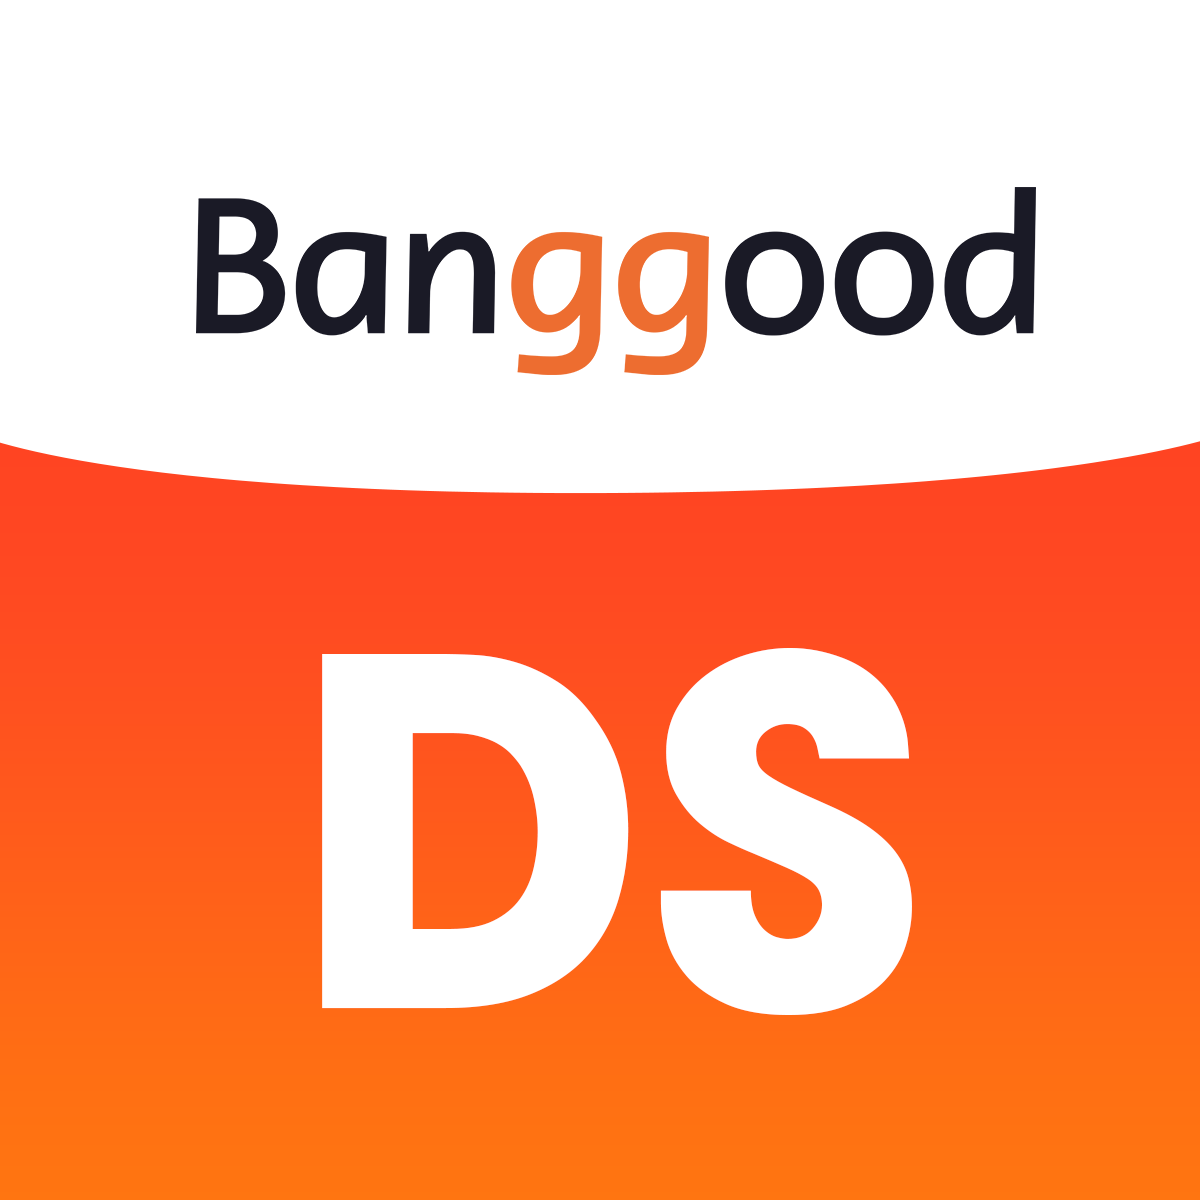 Banggood Dropshipping App Free